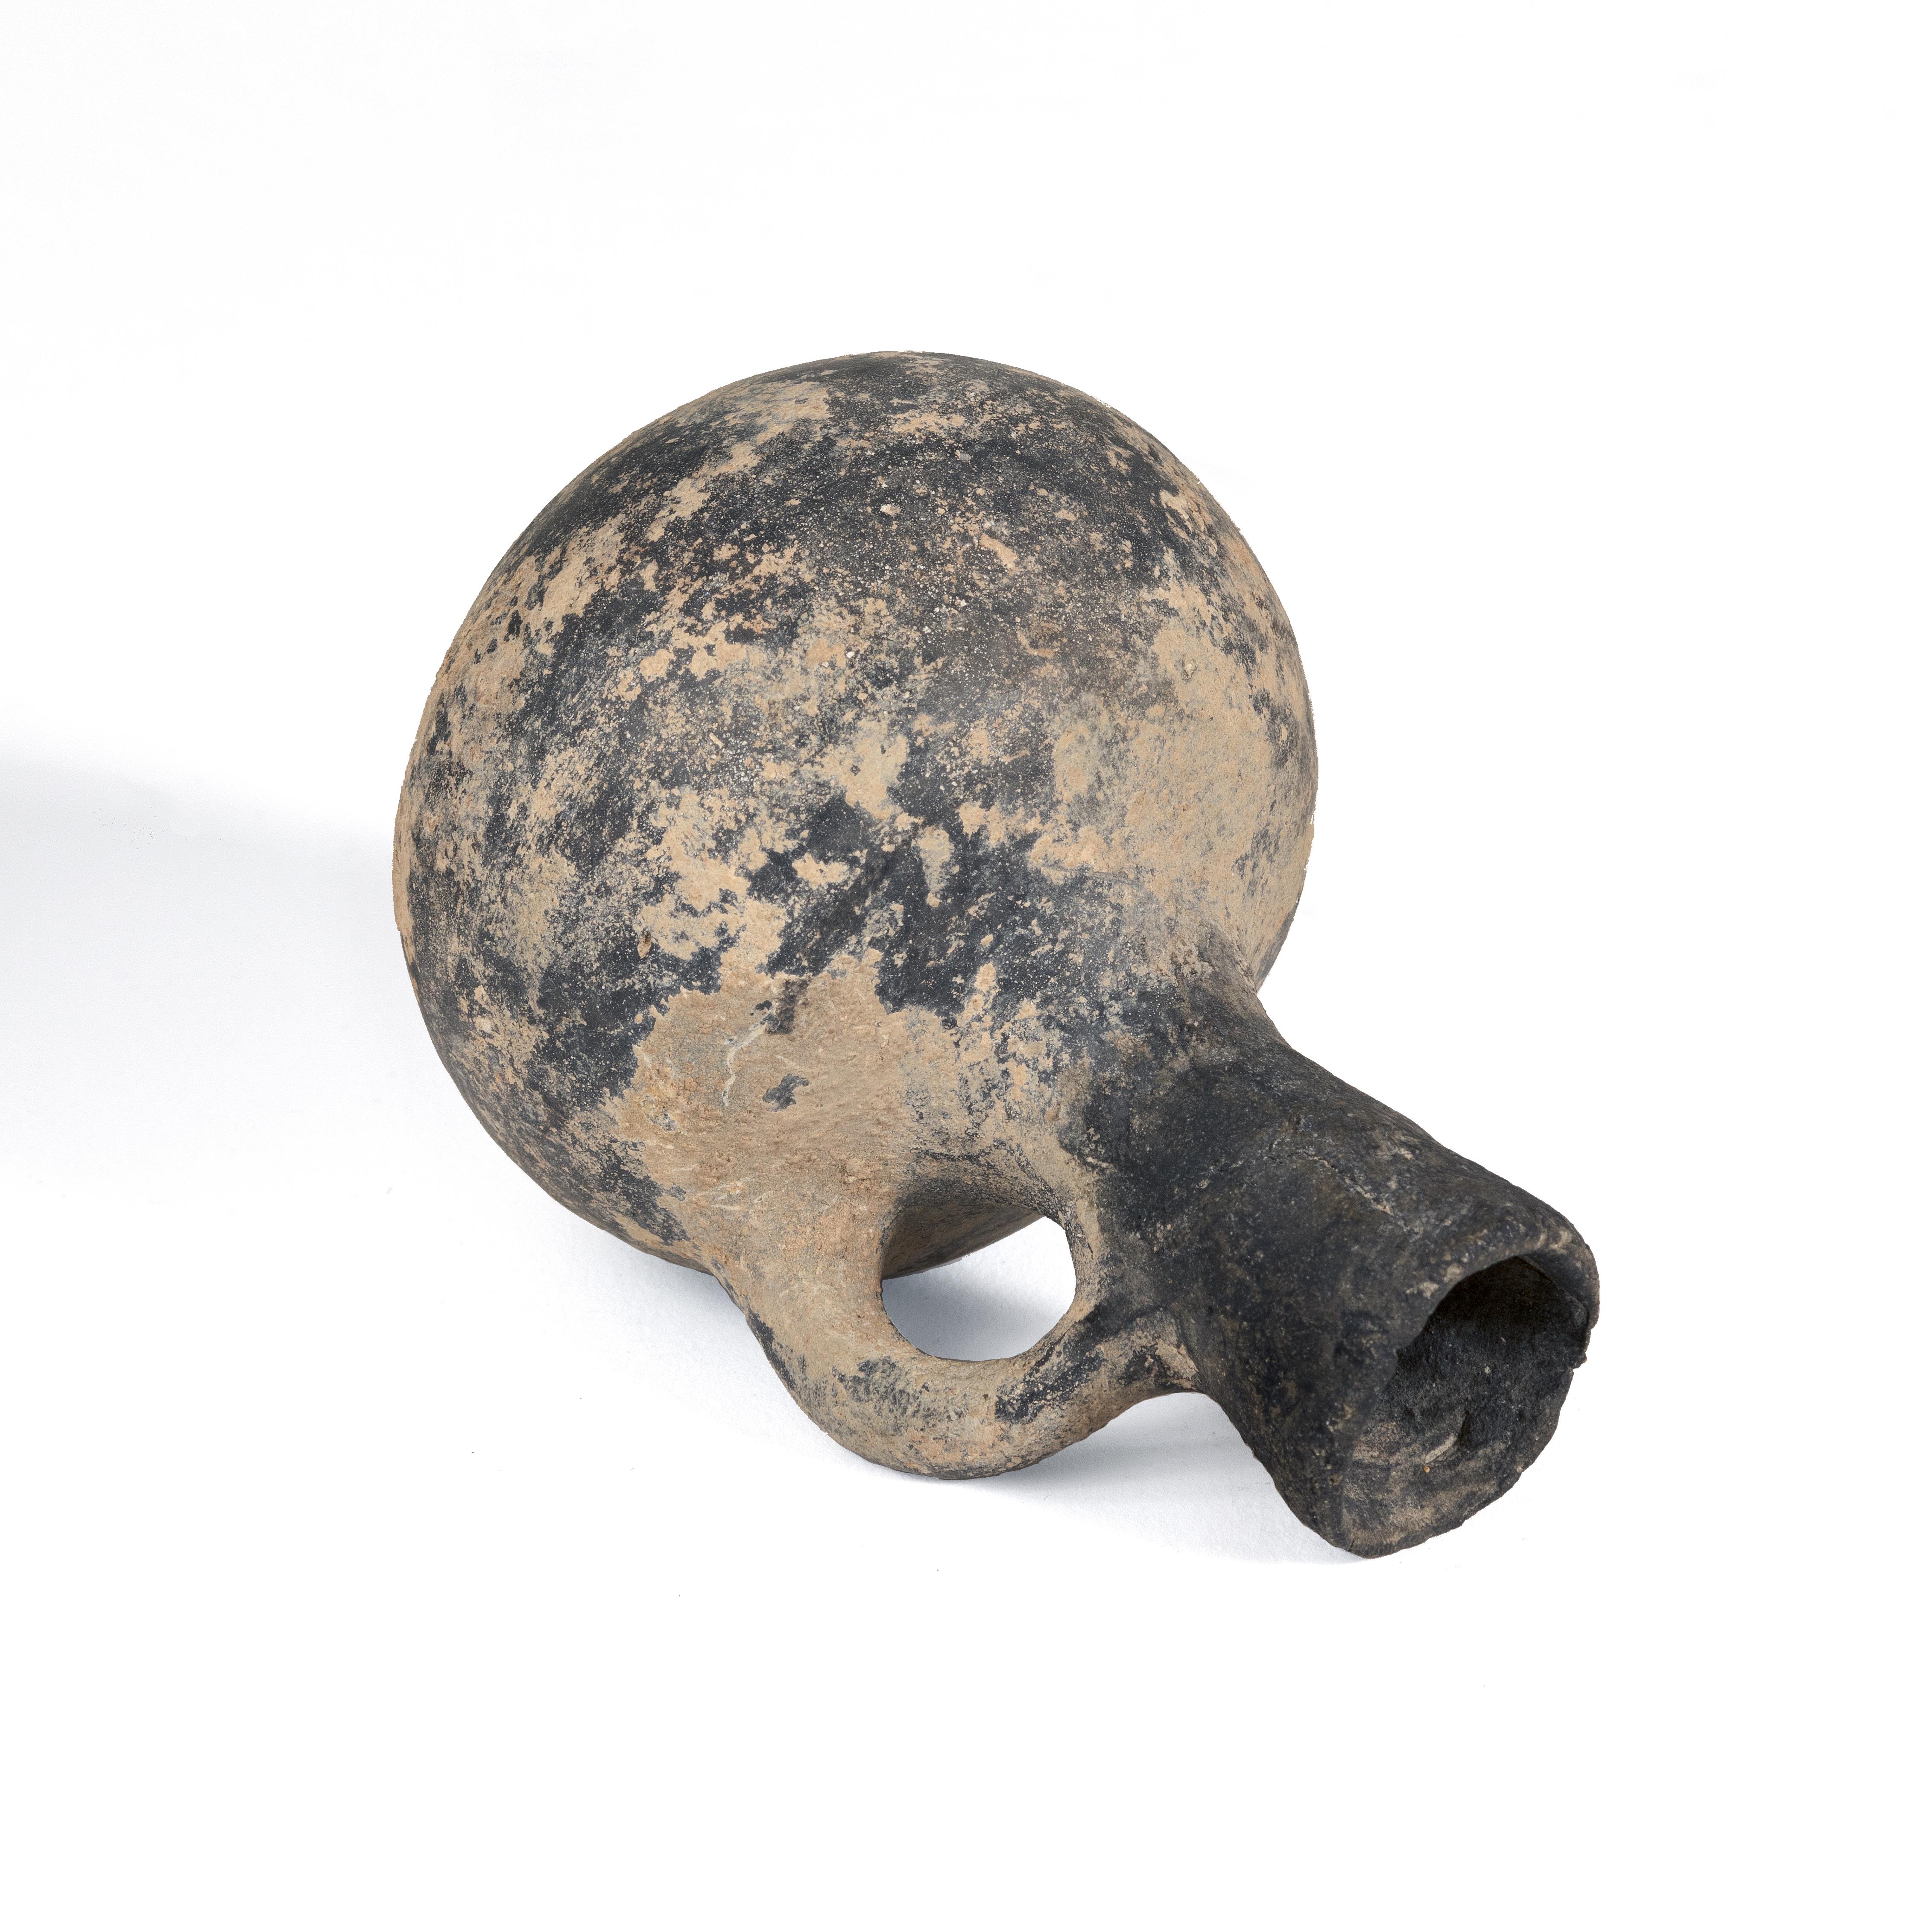 4x3
Keramik

Antiker Parfümkrug aus Ton aus der Eisenzeit, entdeckt in Jerusalem.